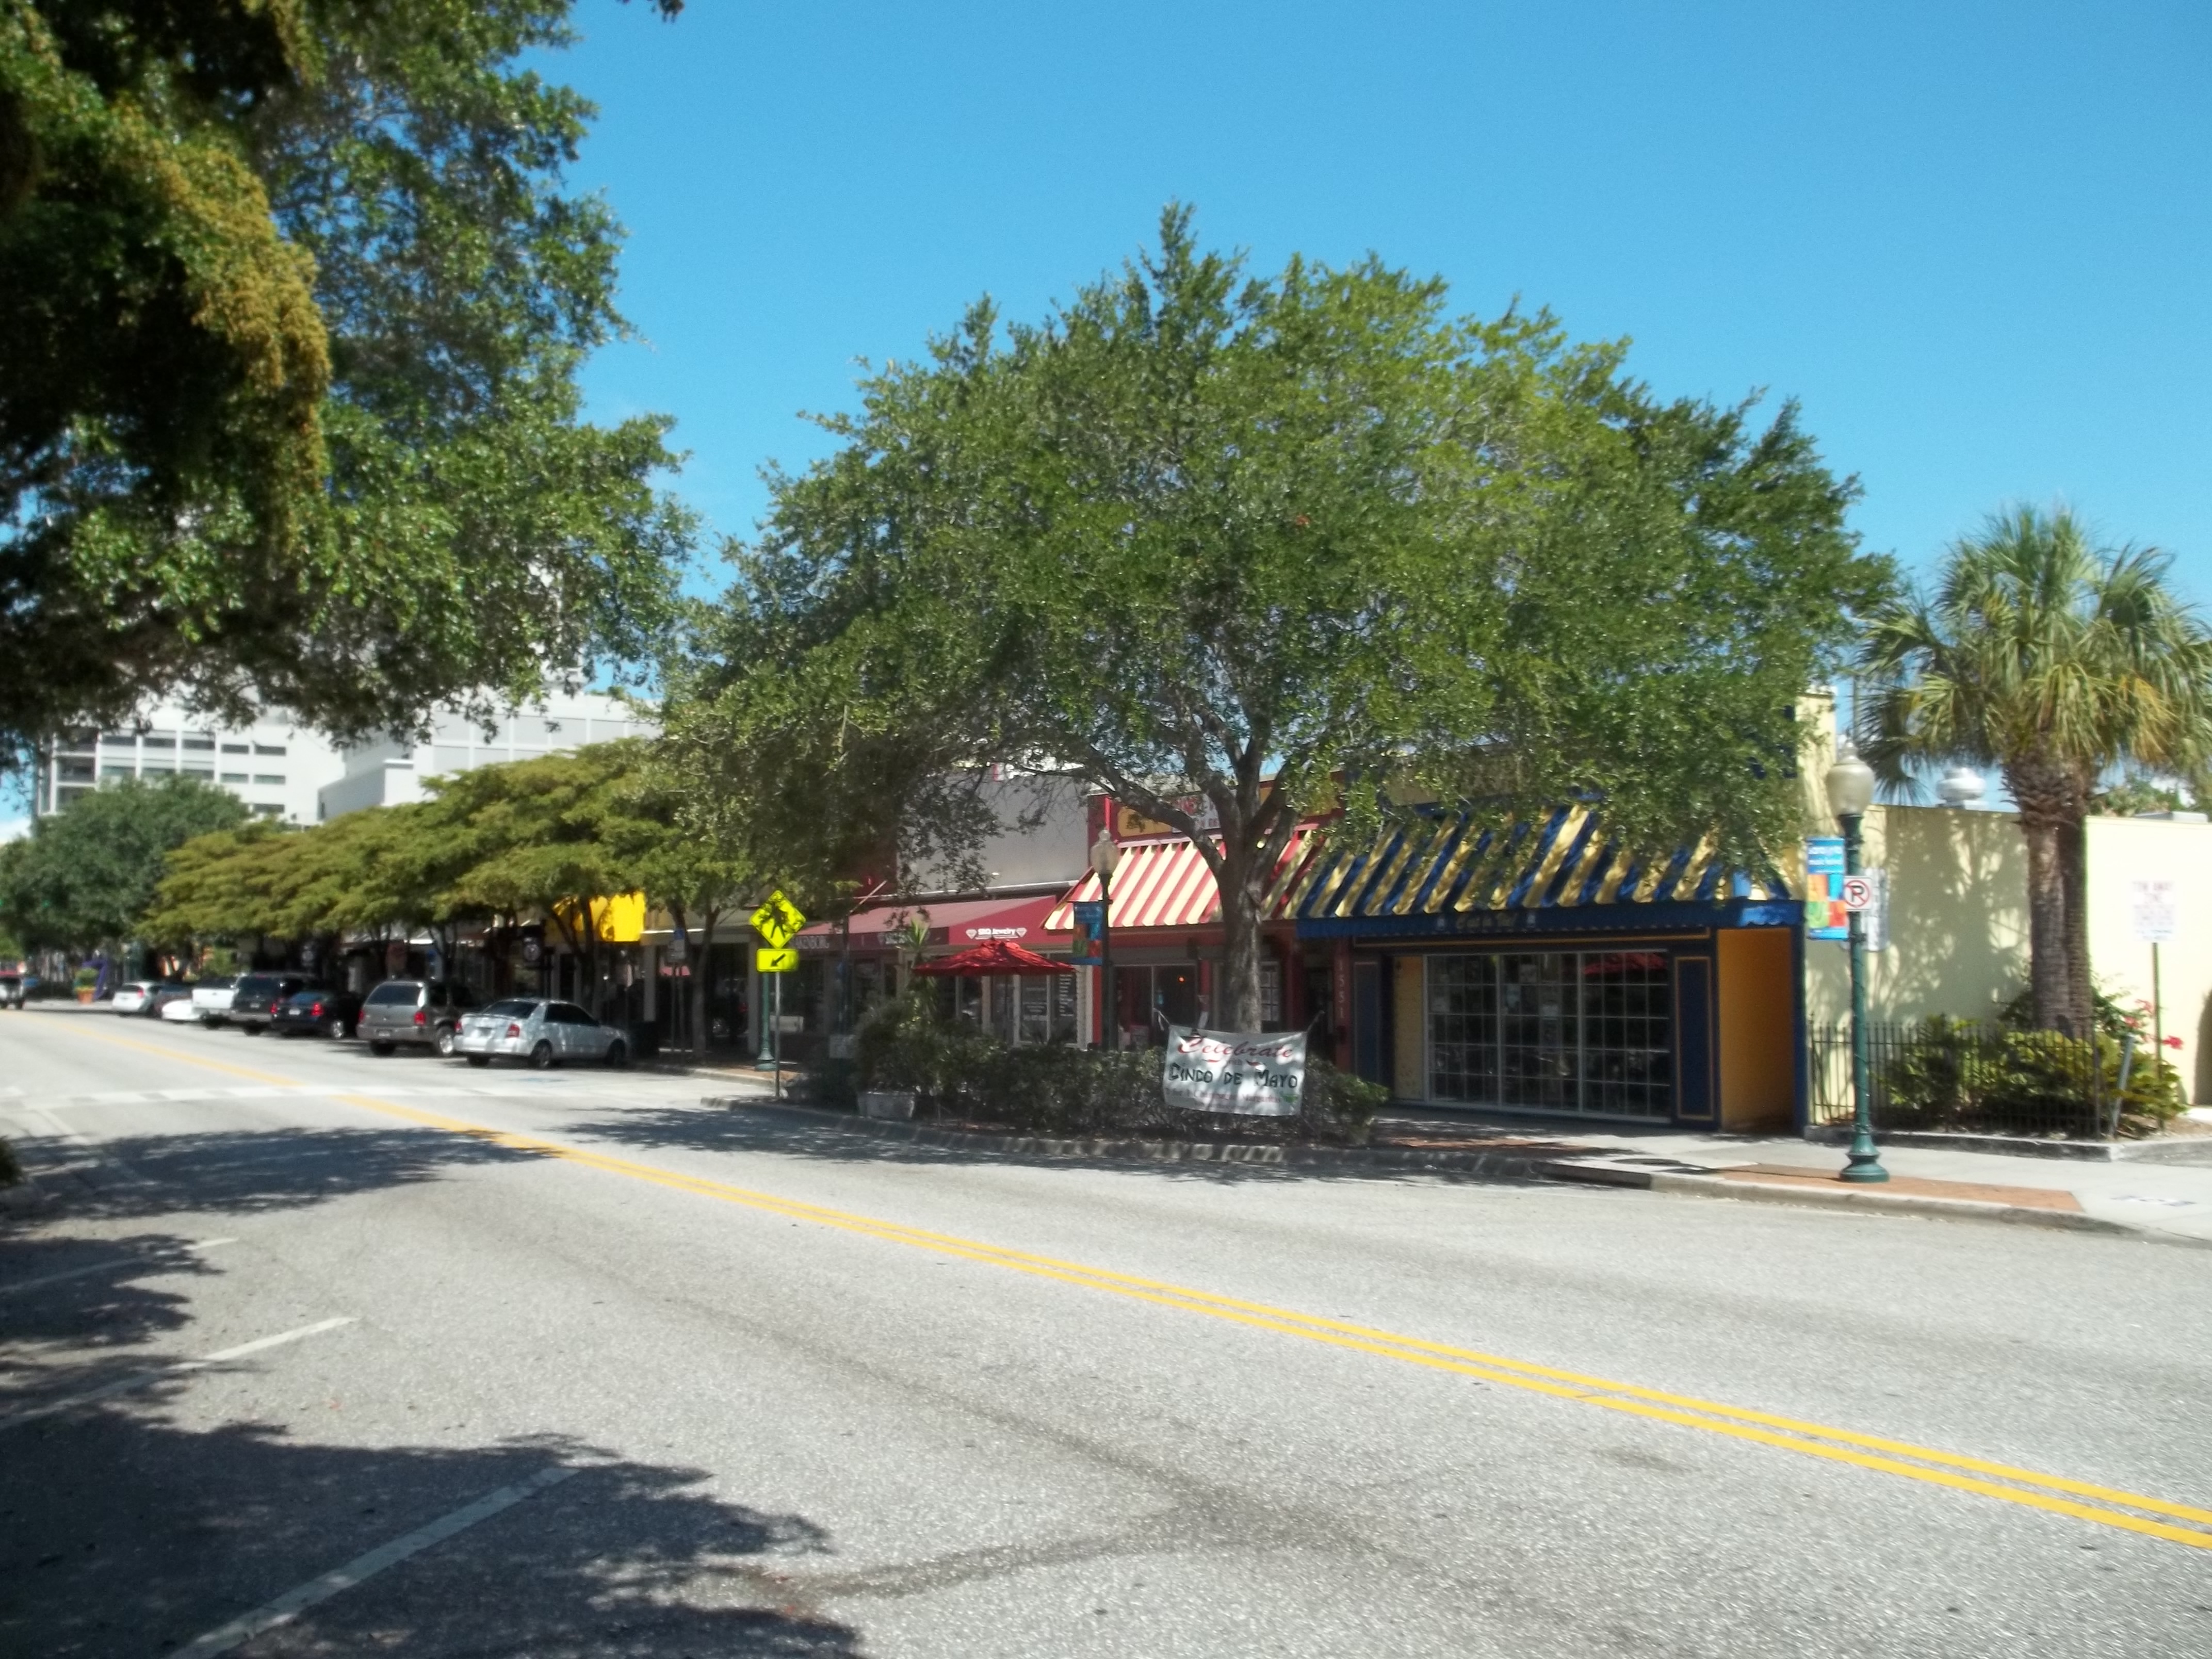  Downtown  Sarasota  Historic  District  in Sarasota  Florida  